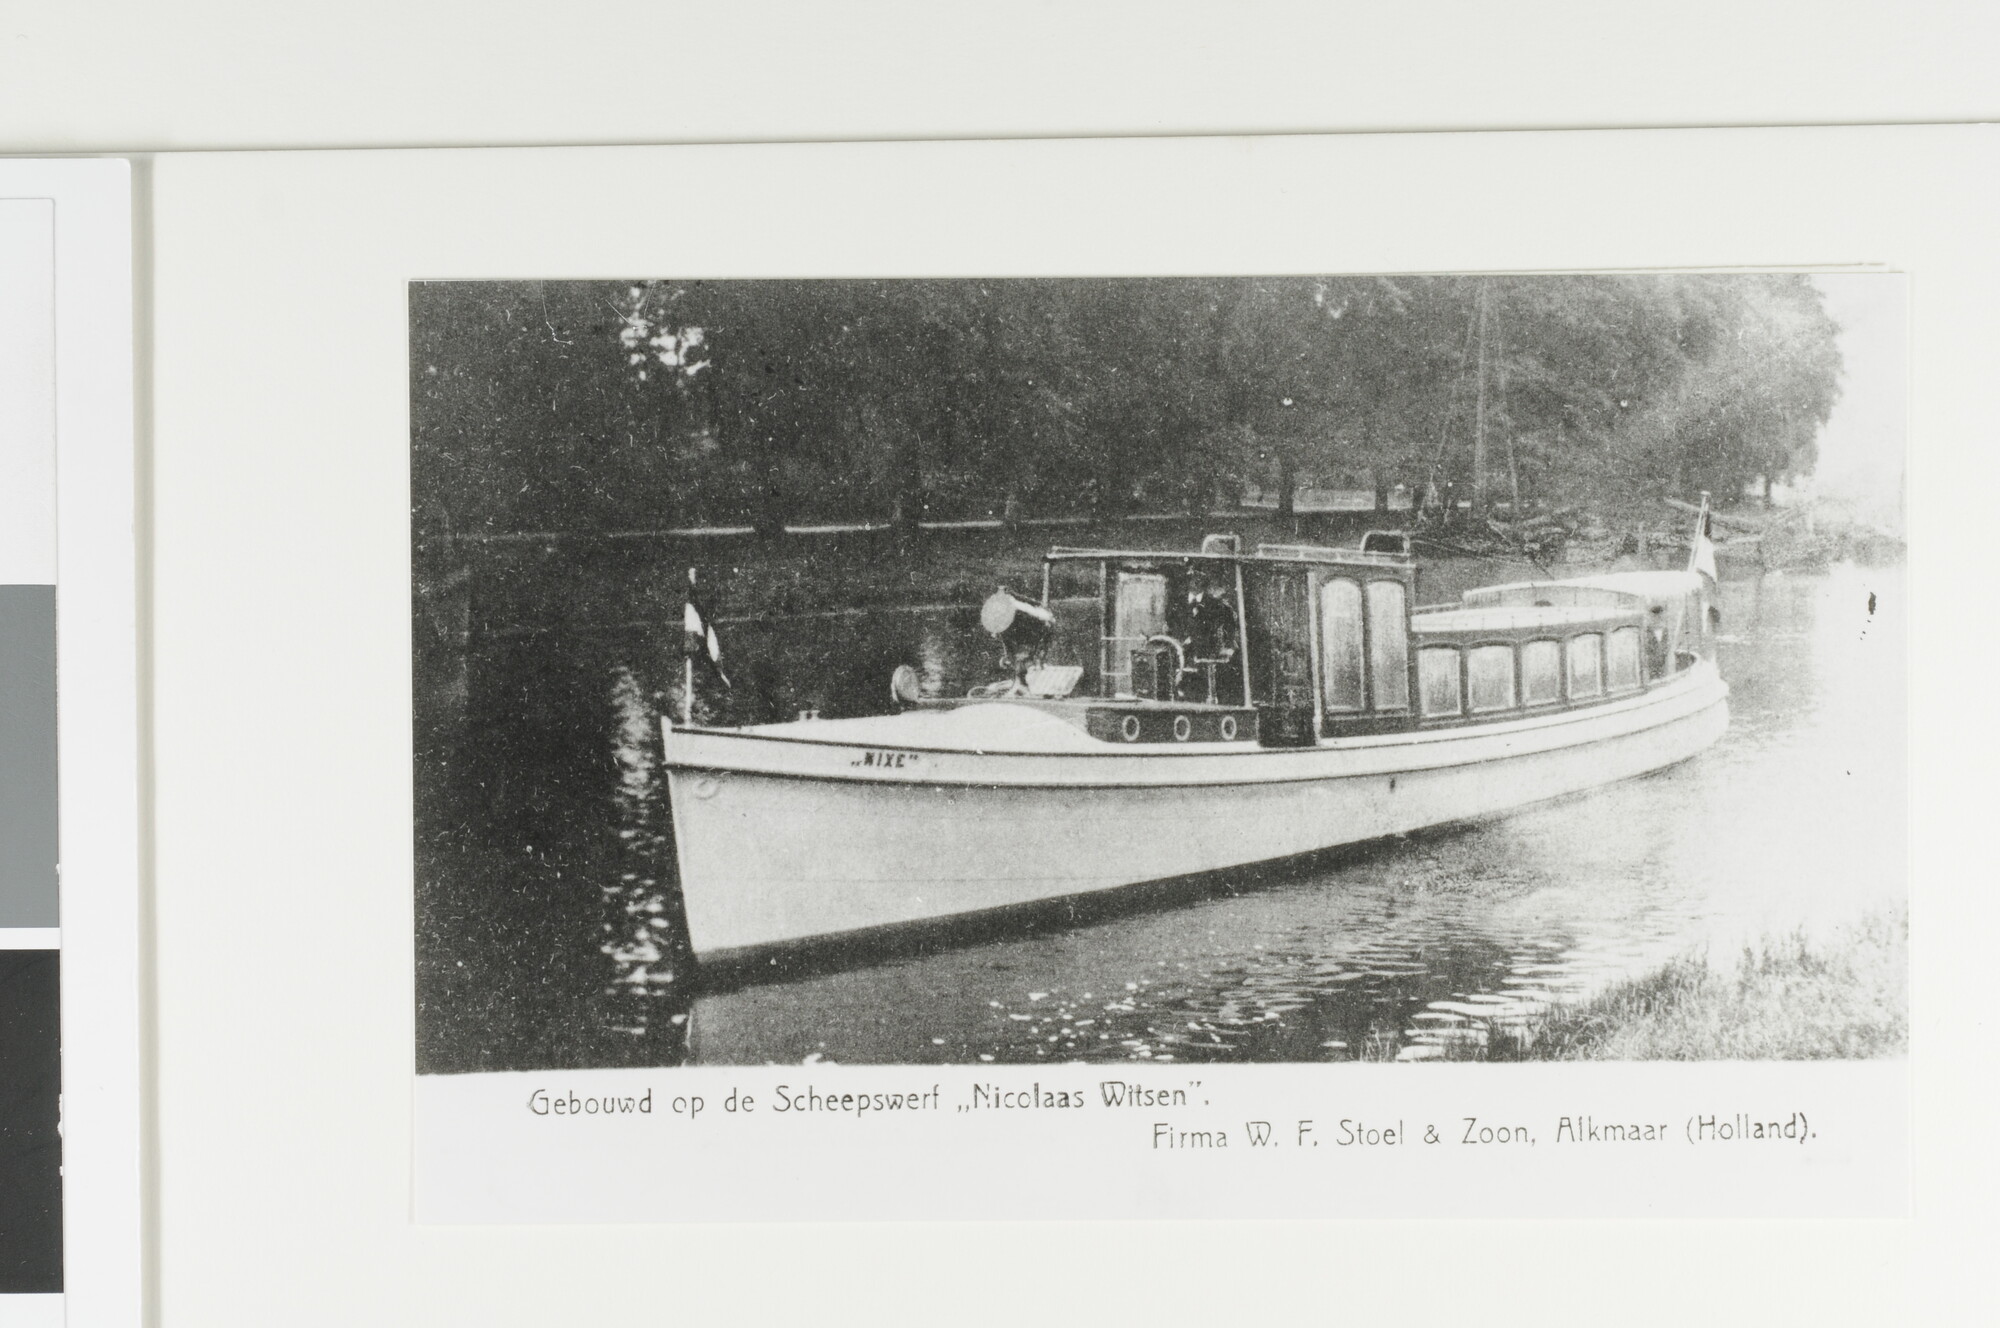 1992.1441; Salon-motorbootje 'Nixe', gebouwd bij de scheepswerf 'Nicolaas Witsen'; foto